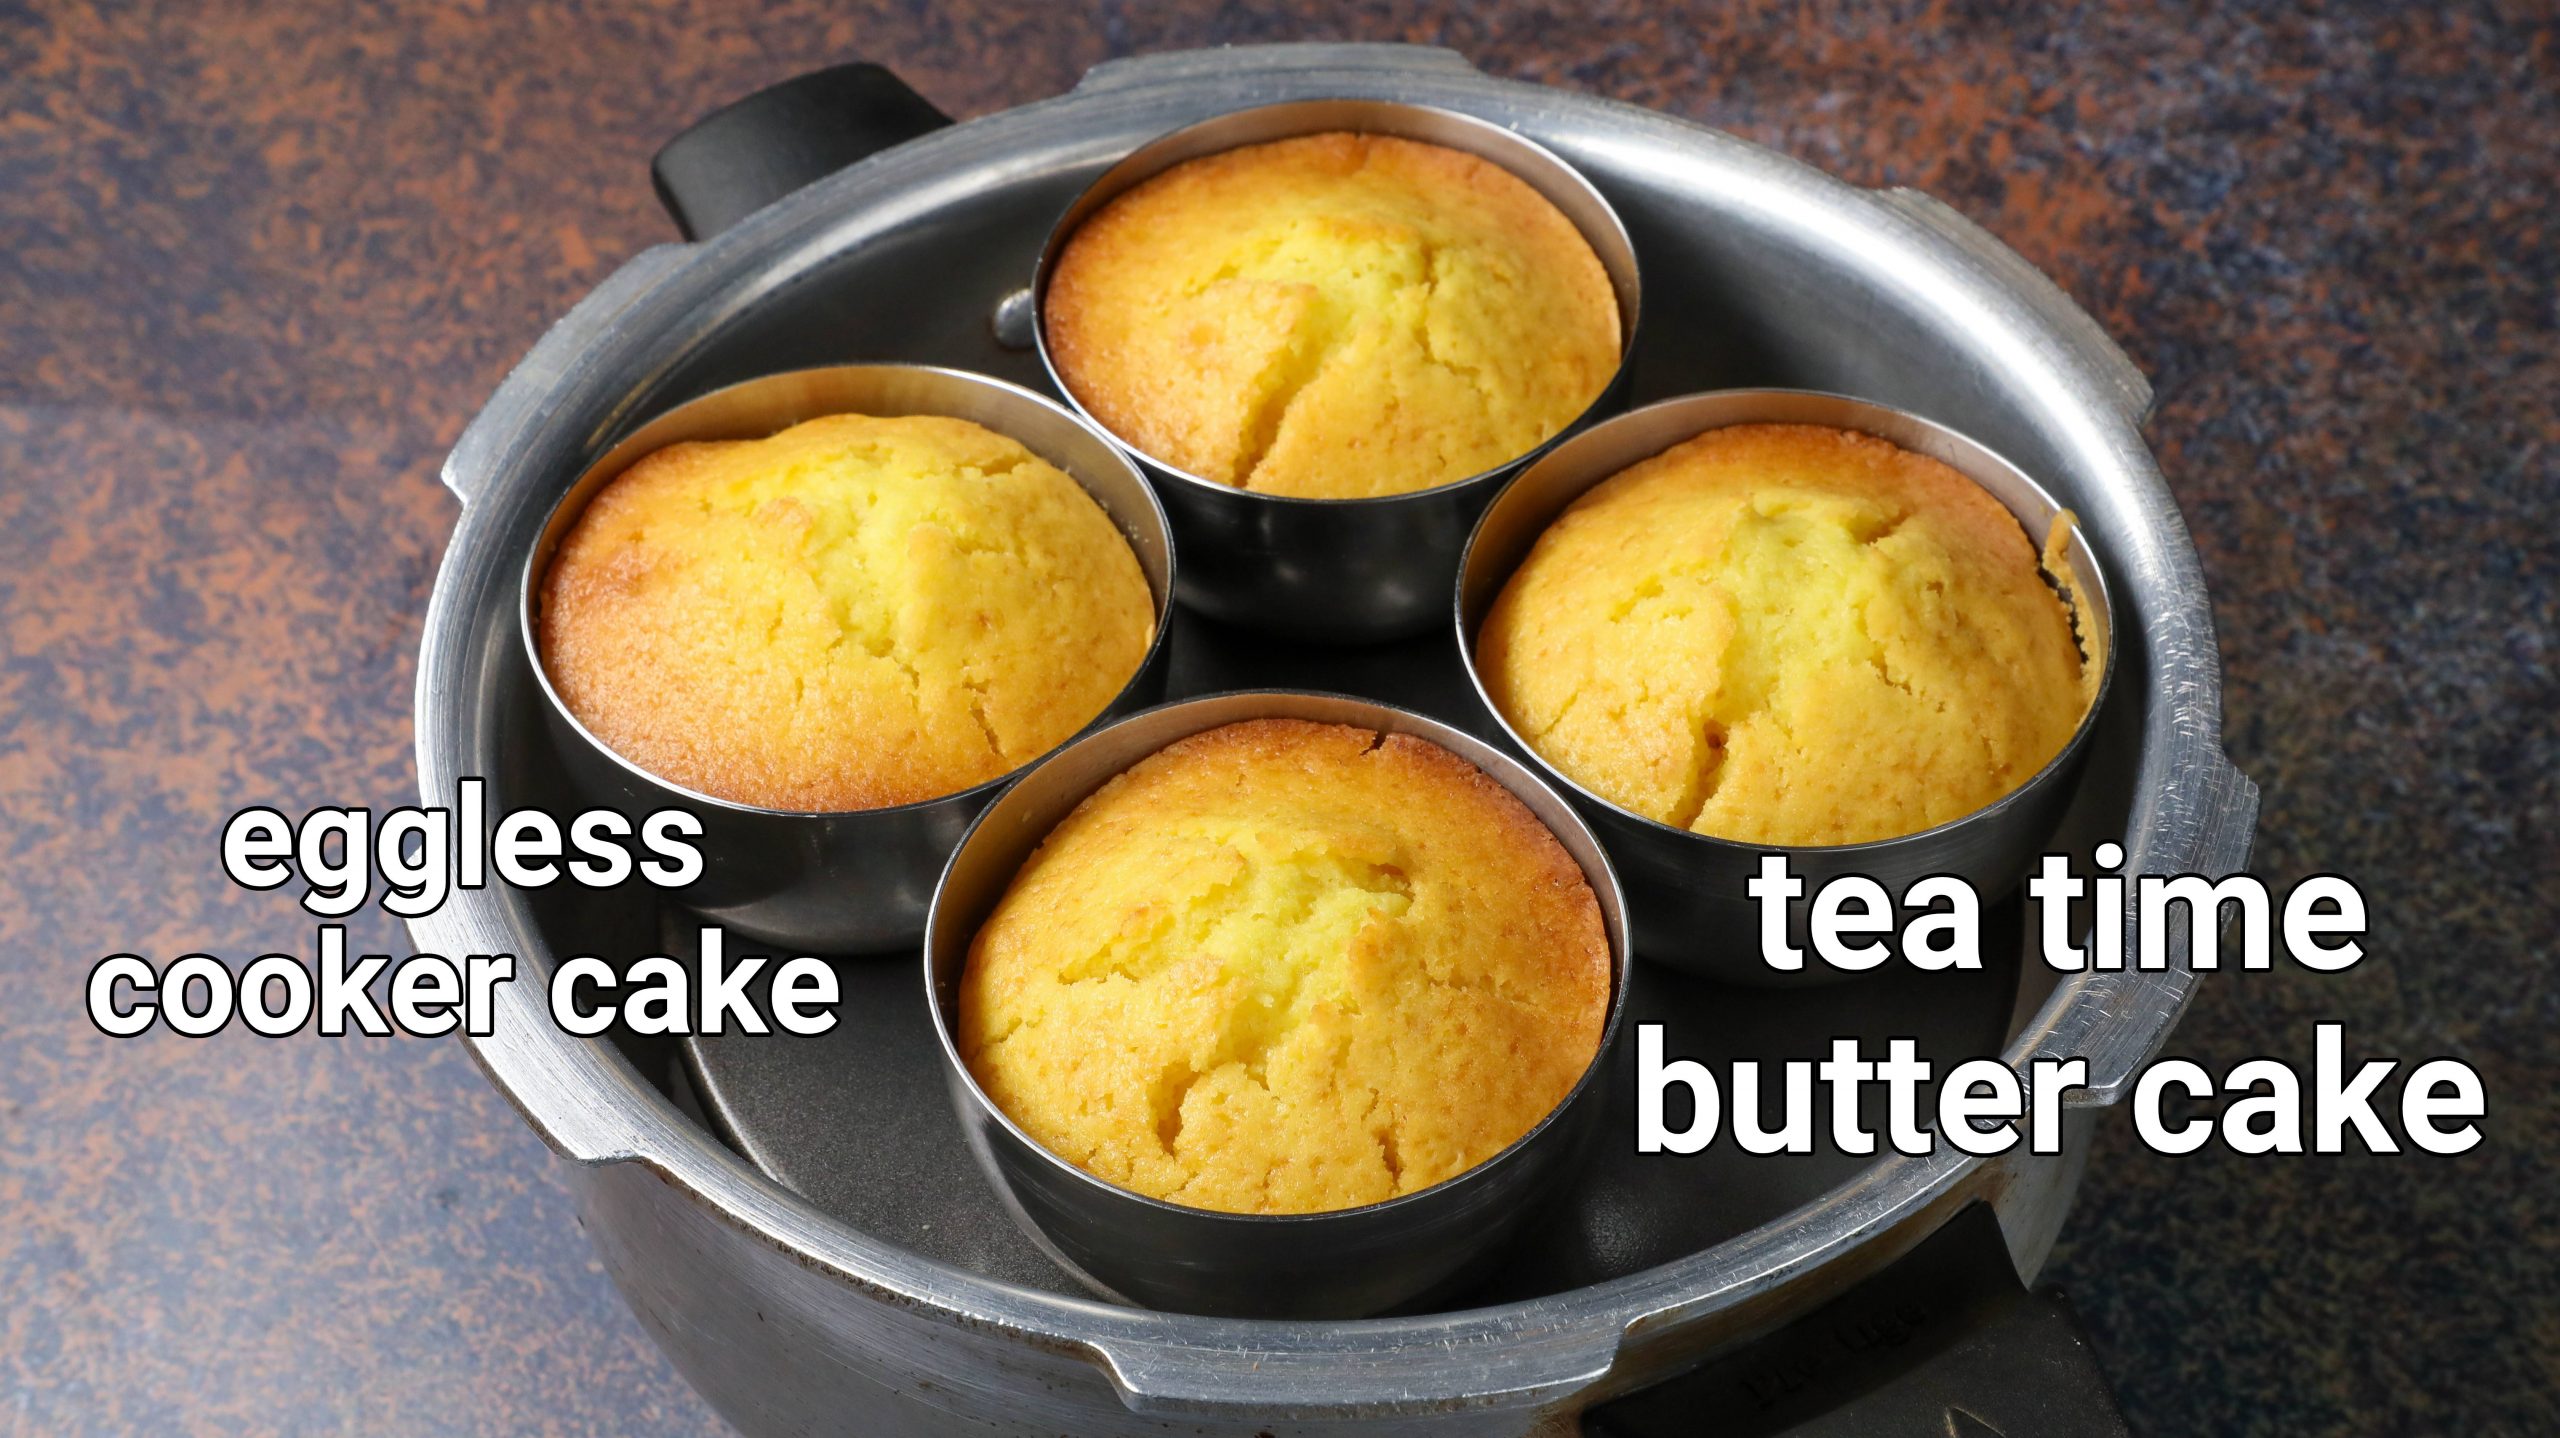 butter cake recipe  tea time cake in steel cups  evening tea cake recipes